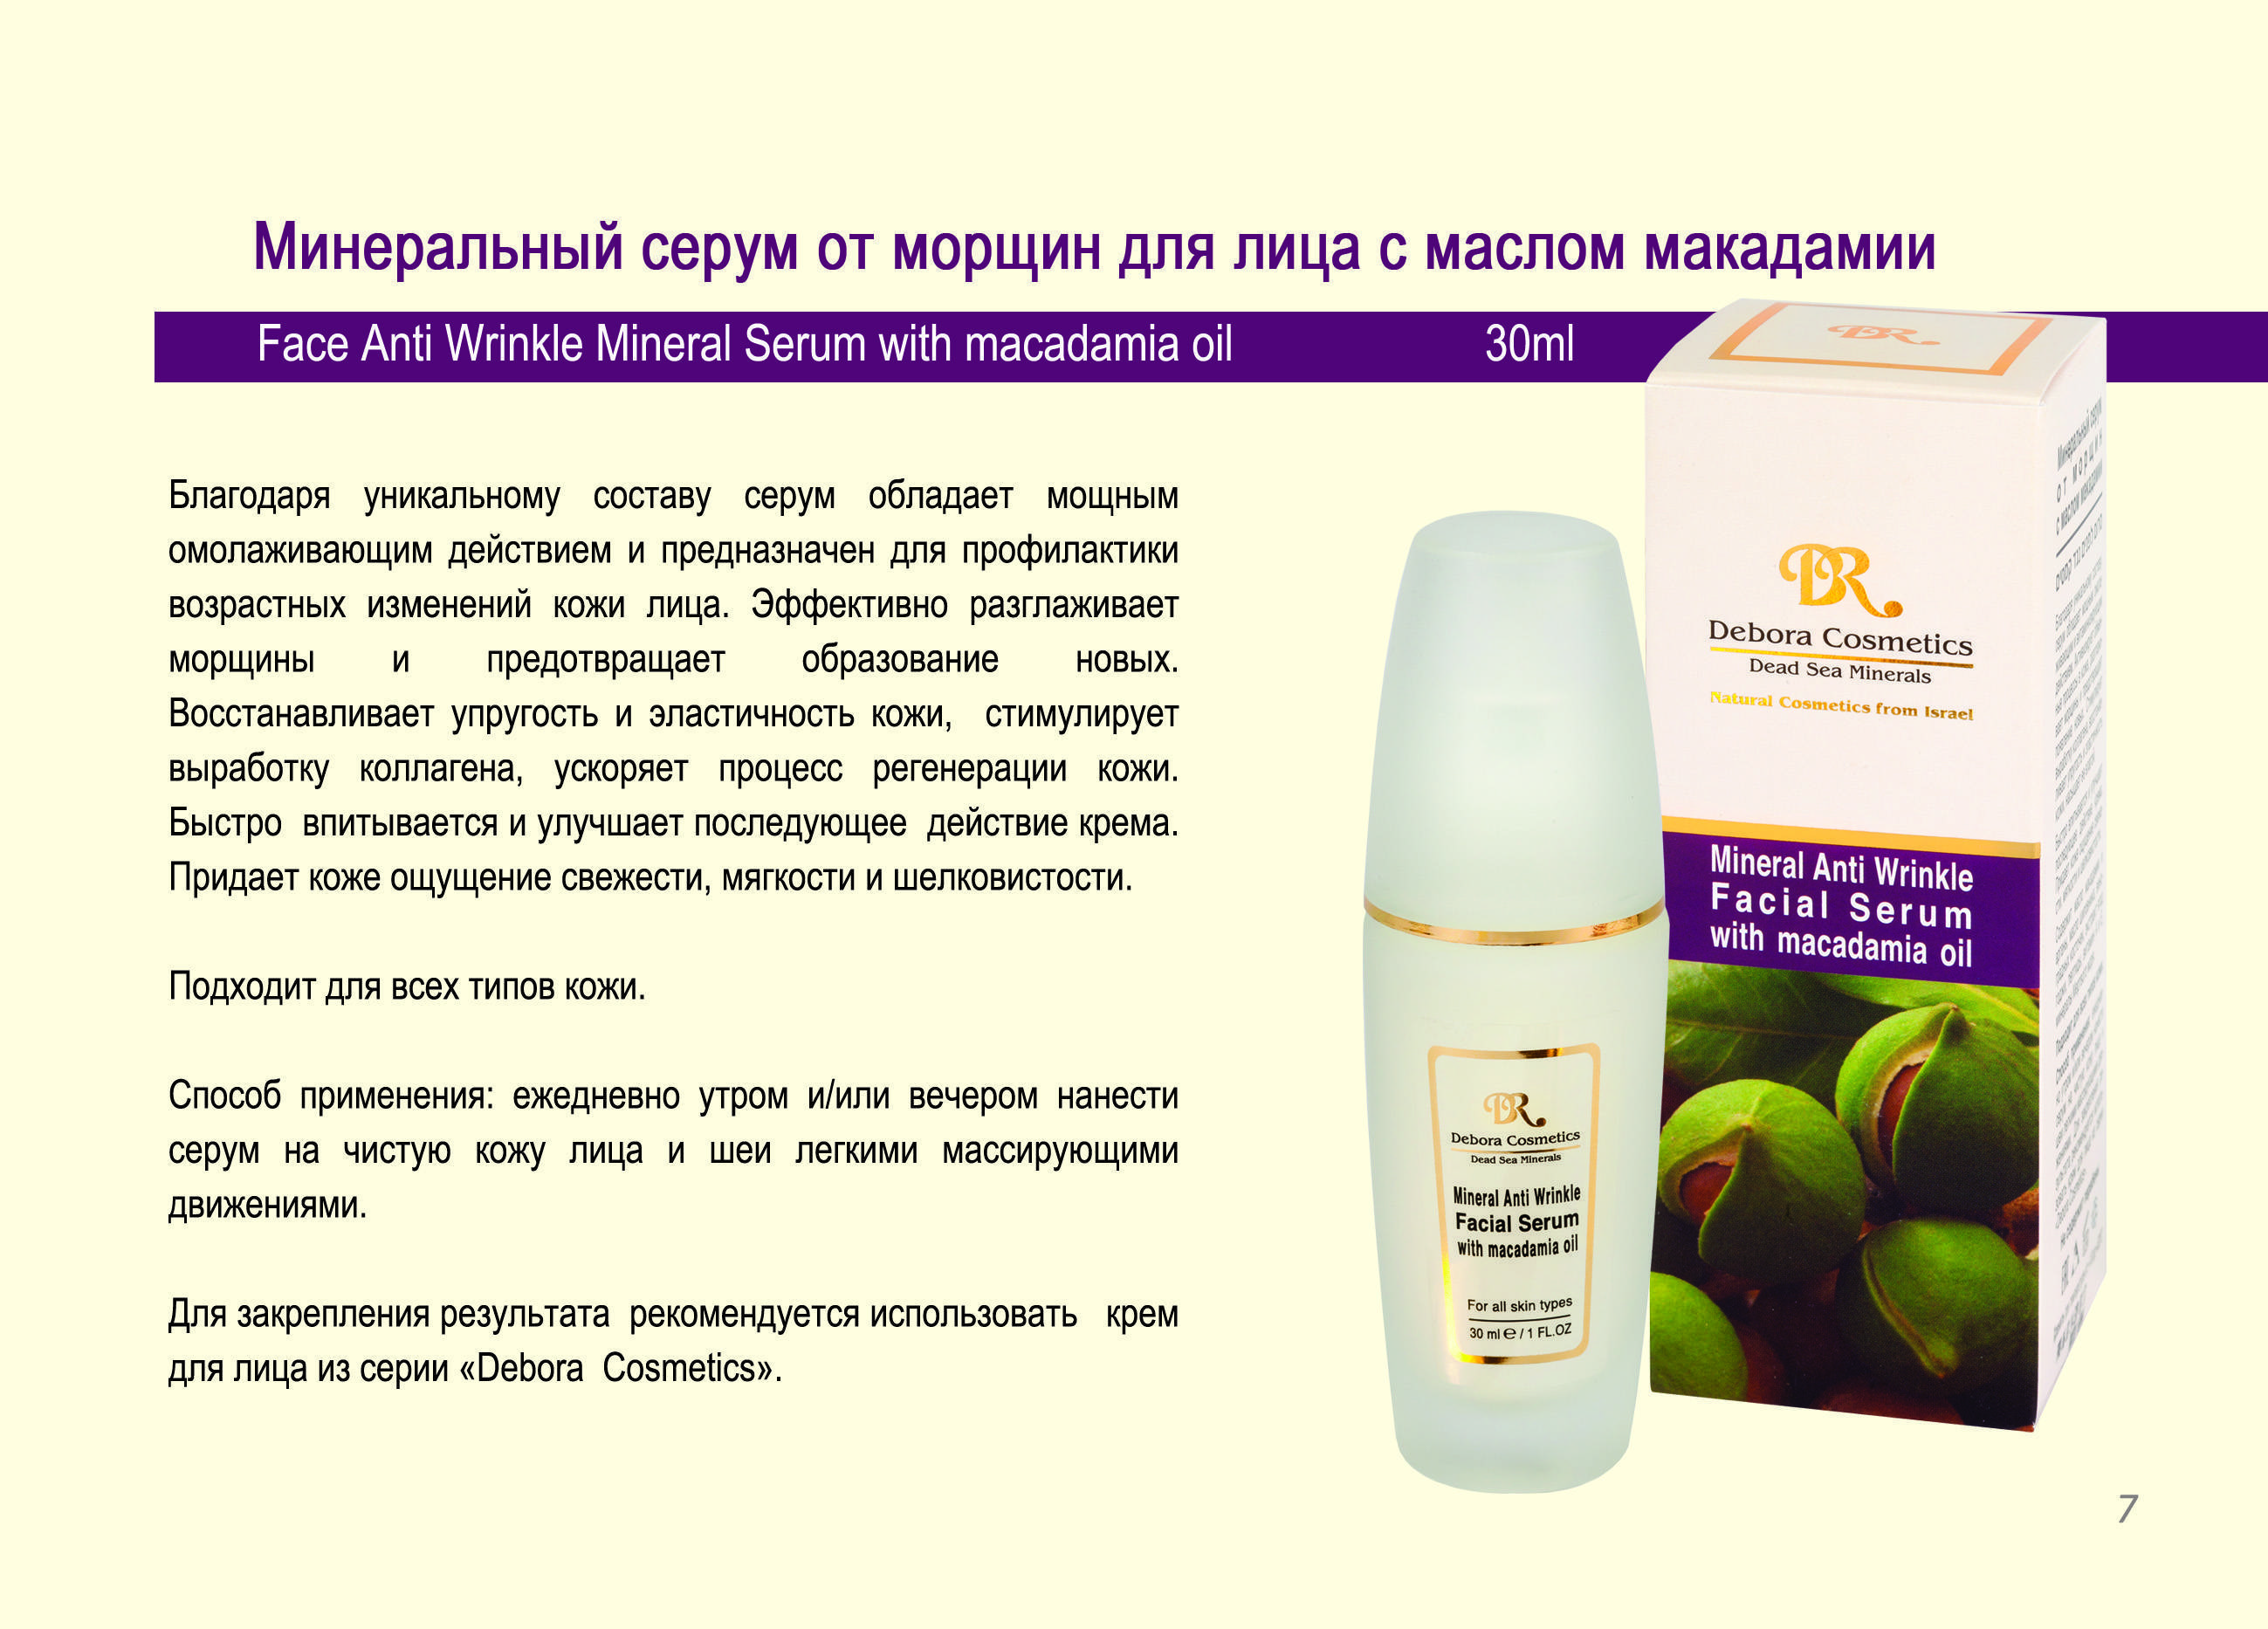 Абрикосовое масло для лица: применение от морщин и других дефектов кожи, рецепты